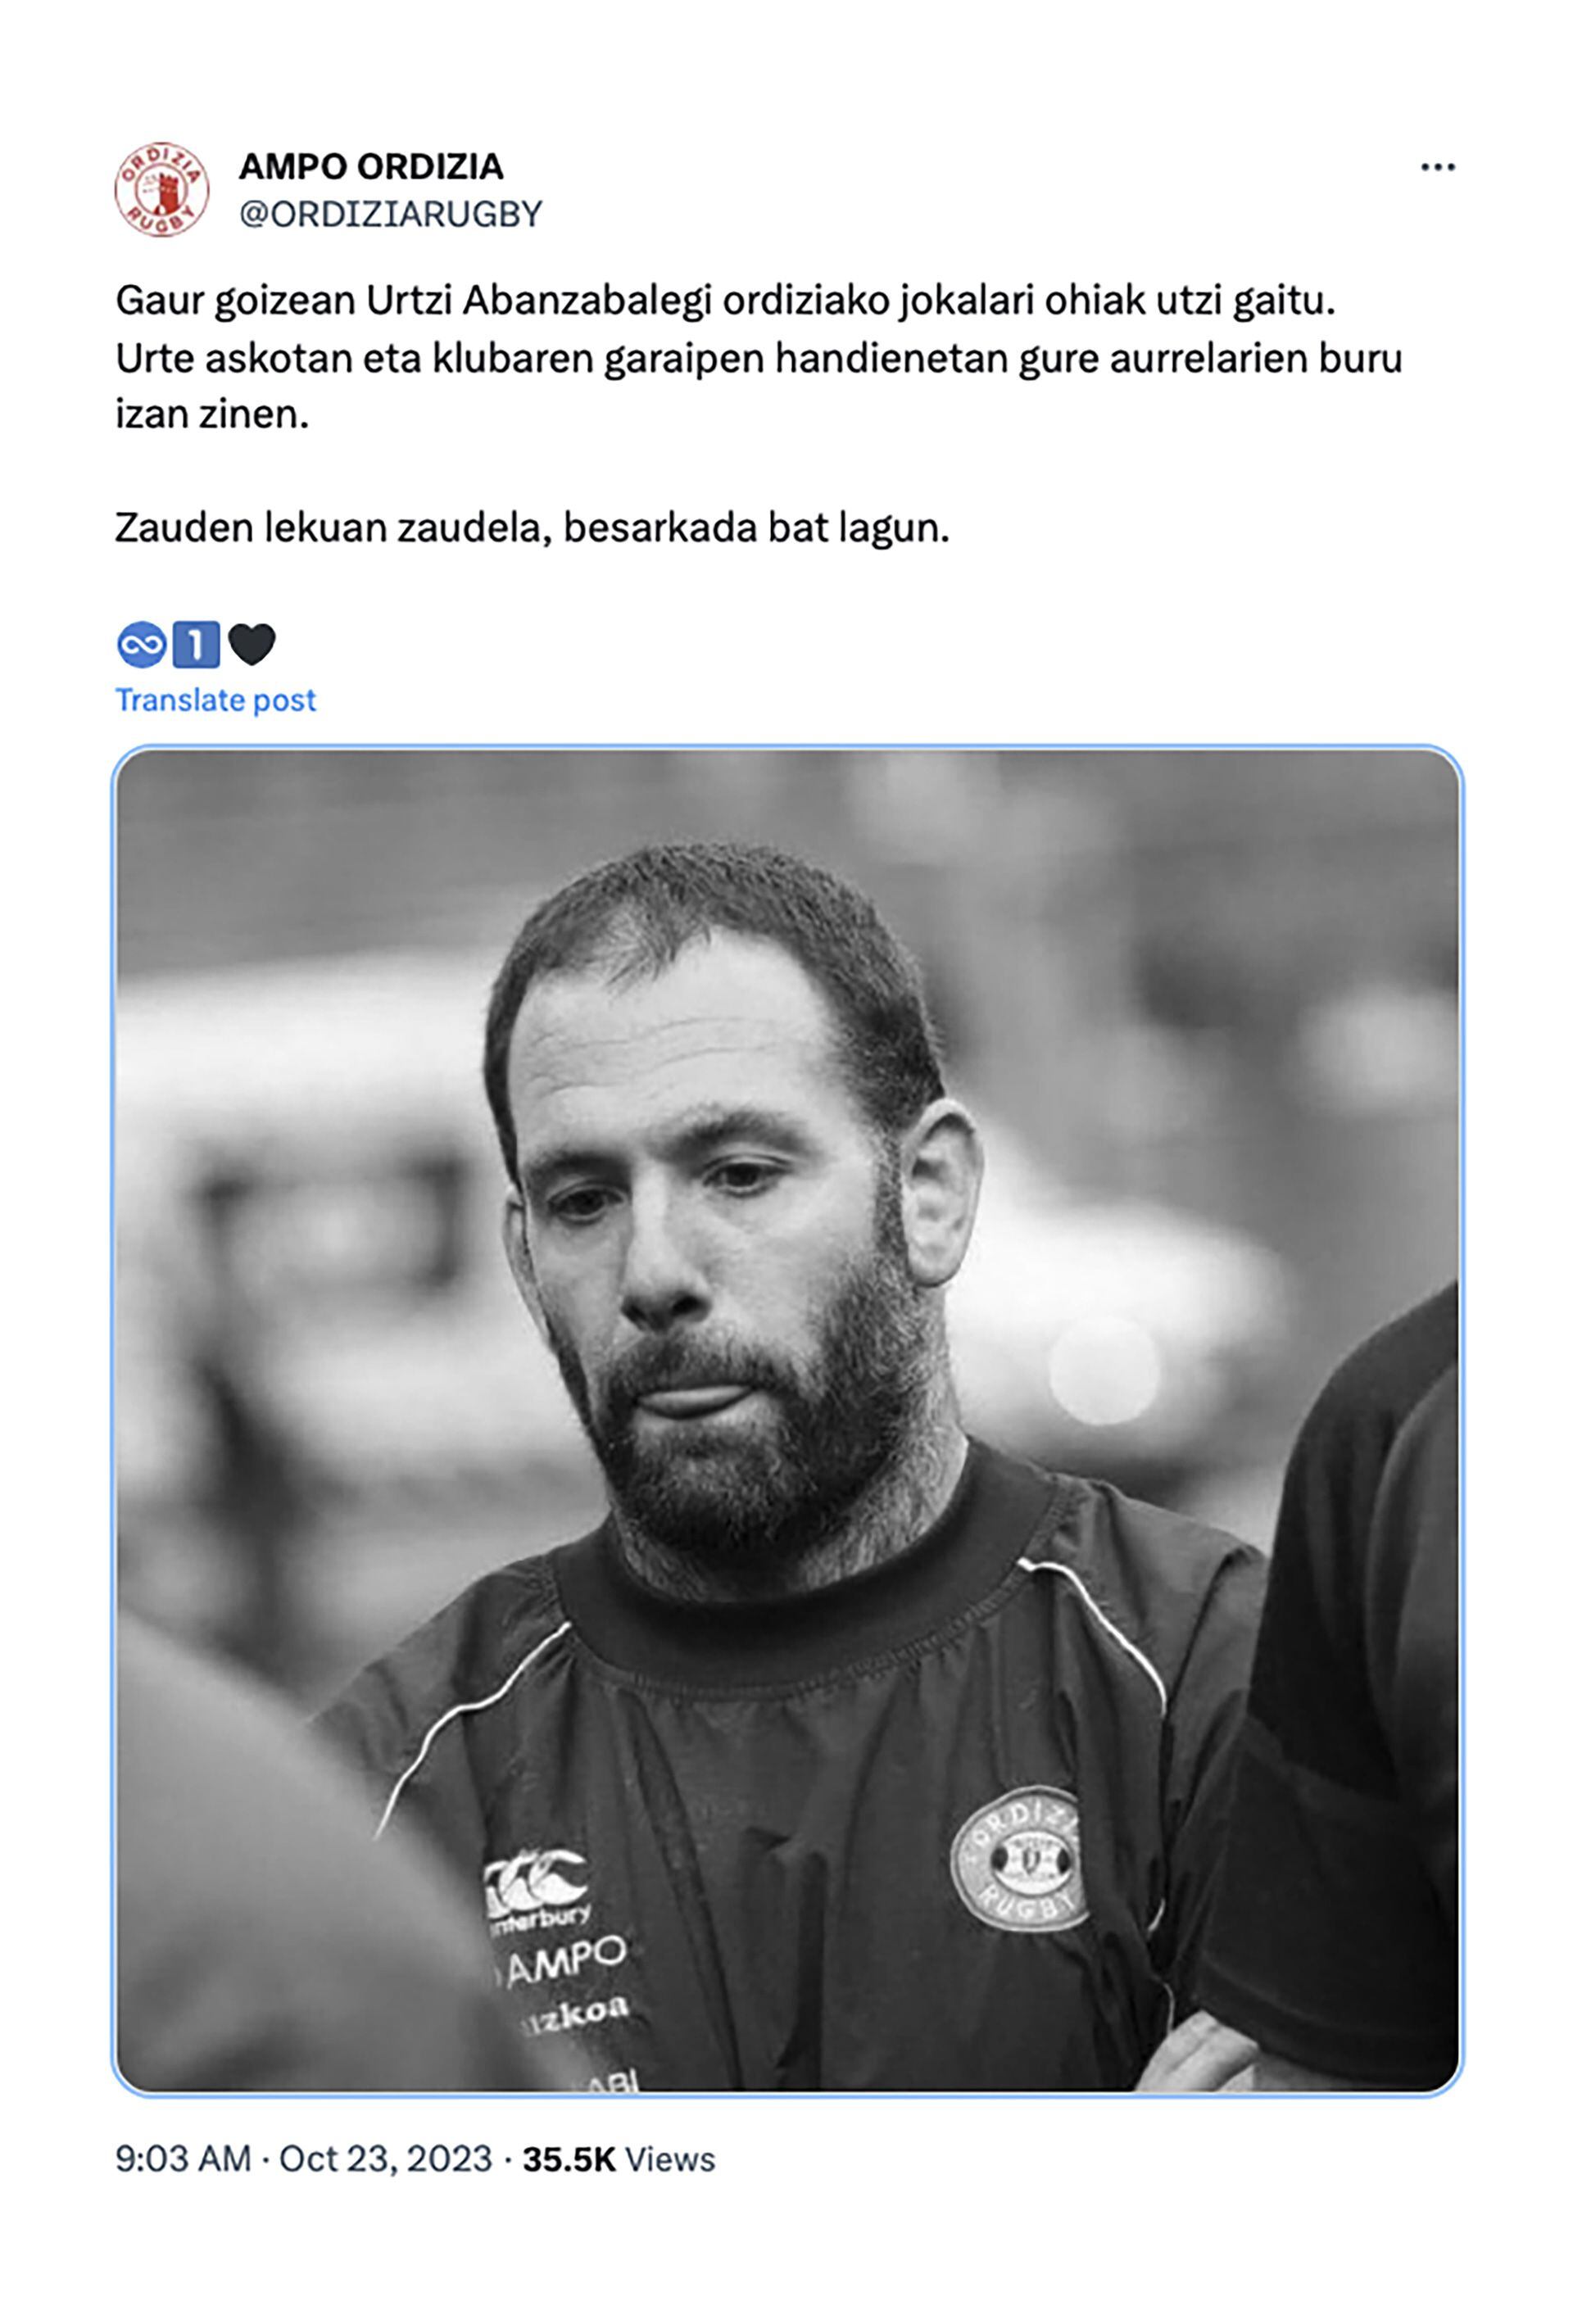 El mensaje del club lamentando la muerte de Urtzi Abanzabalegi